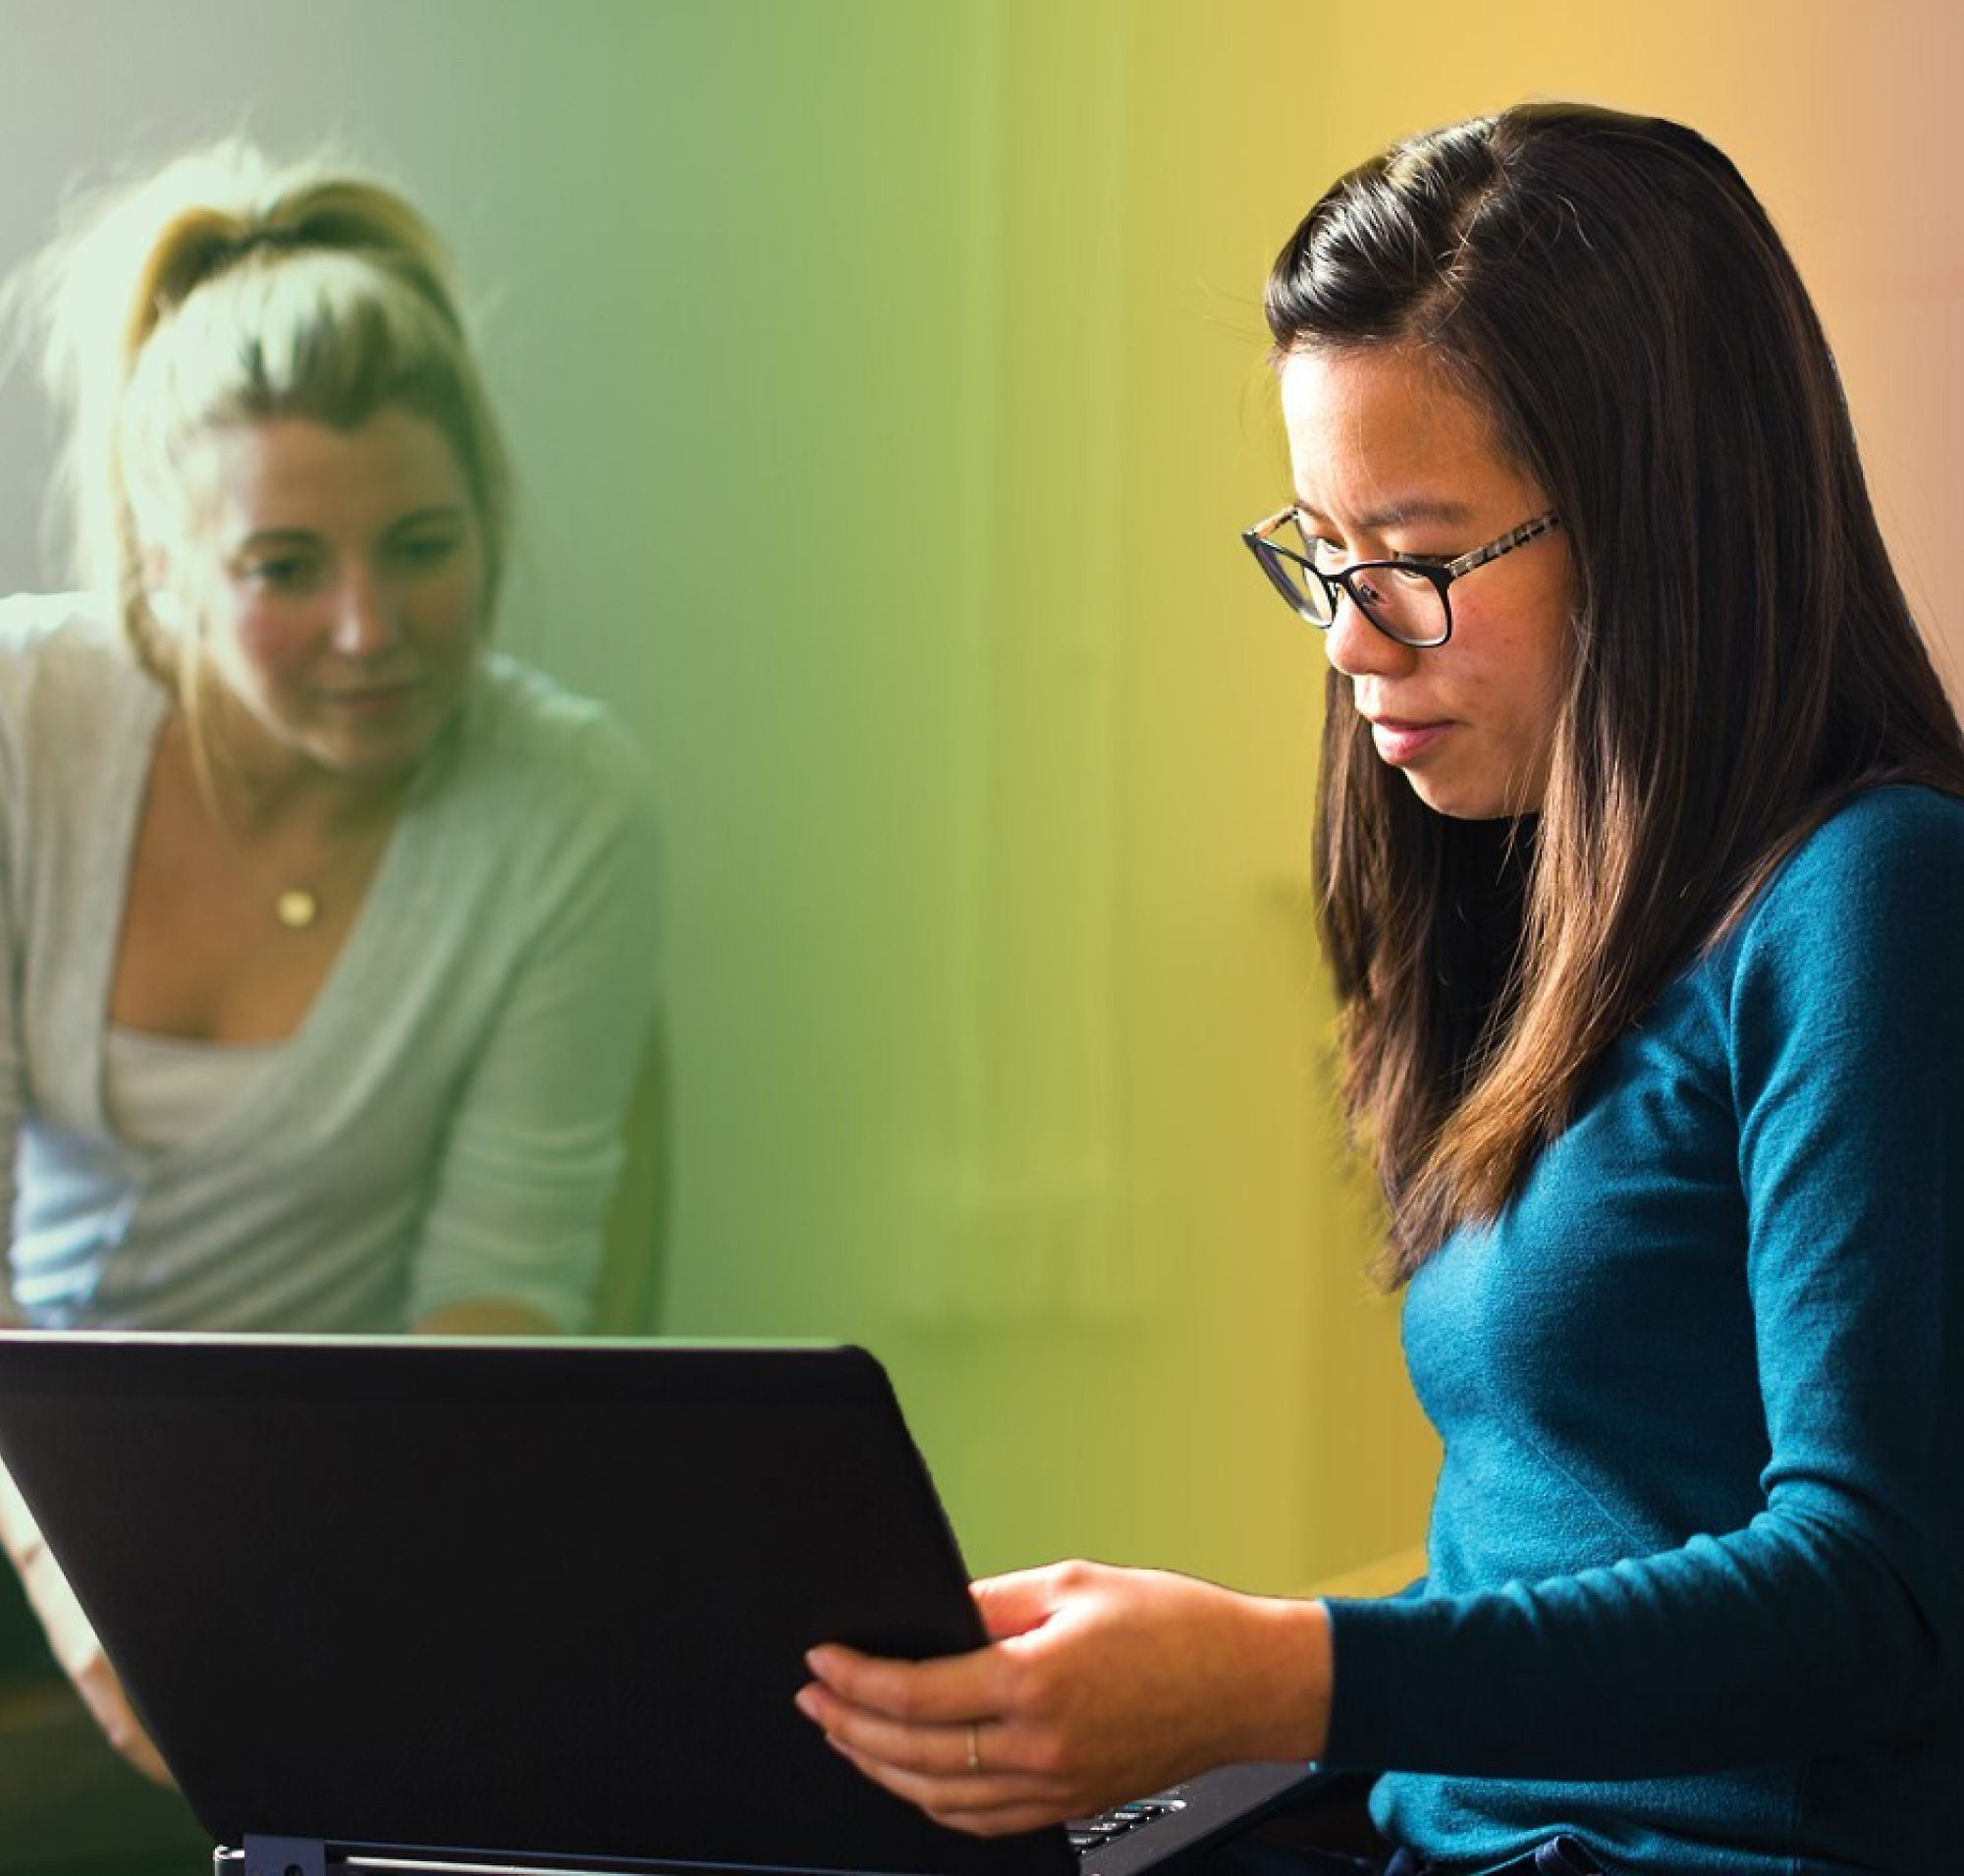 Kaks naist, üks heledate juustega ja teine prillidega, töötavad sülearvutiga värviküllases ruumis.